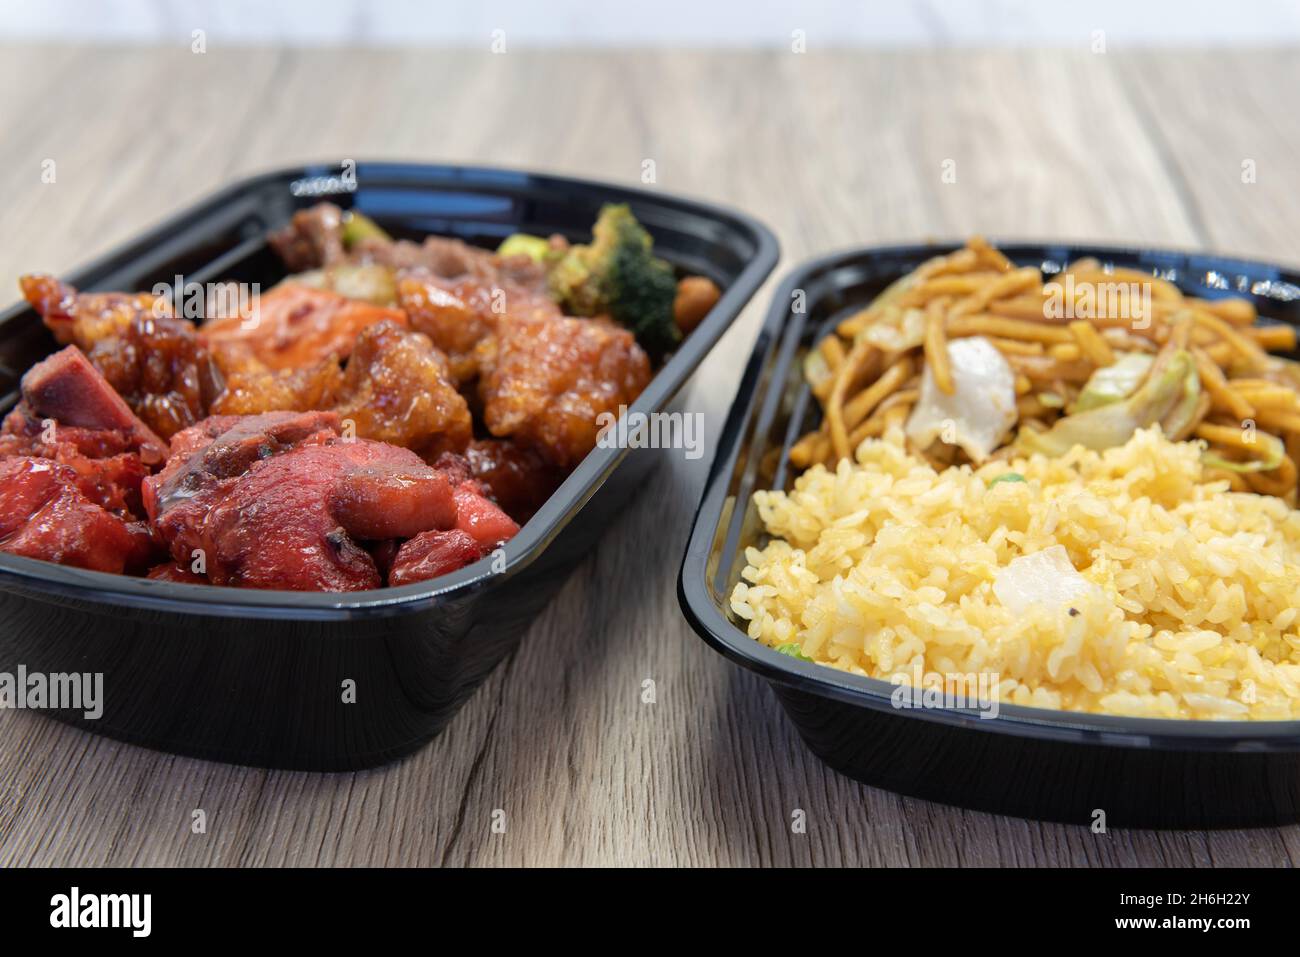 Chinesisches Schnellimbiss-Menü mit gebratenem Reis, Chow mein, Huhn und BBQ-Rippchen für eine sehr herzhafte Mahlzeit. Stockfoto